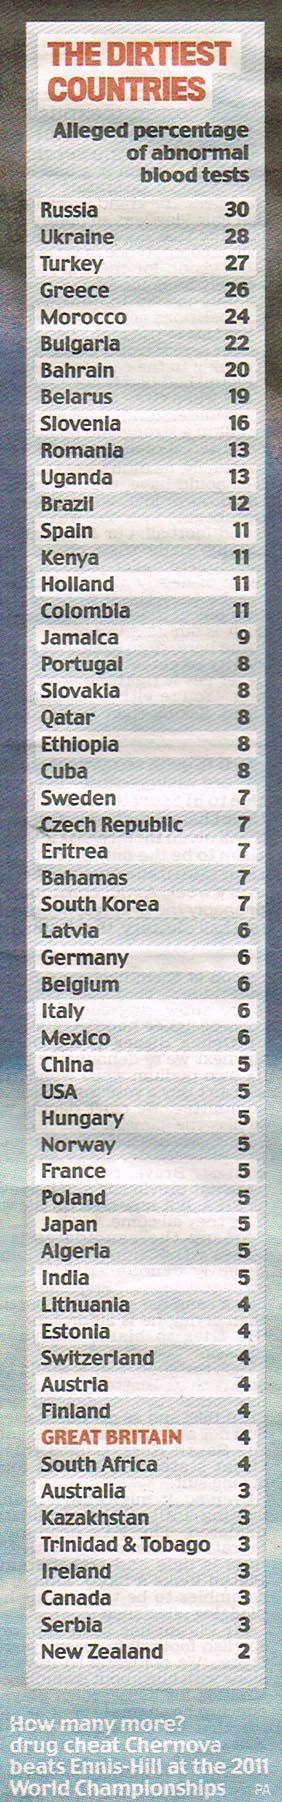 Türkiye o listede 3. sırada